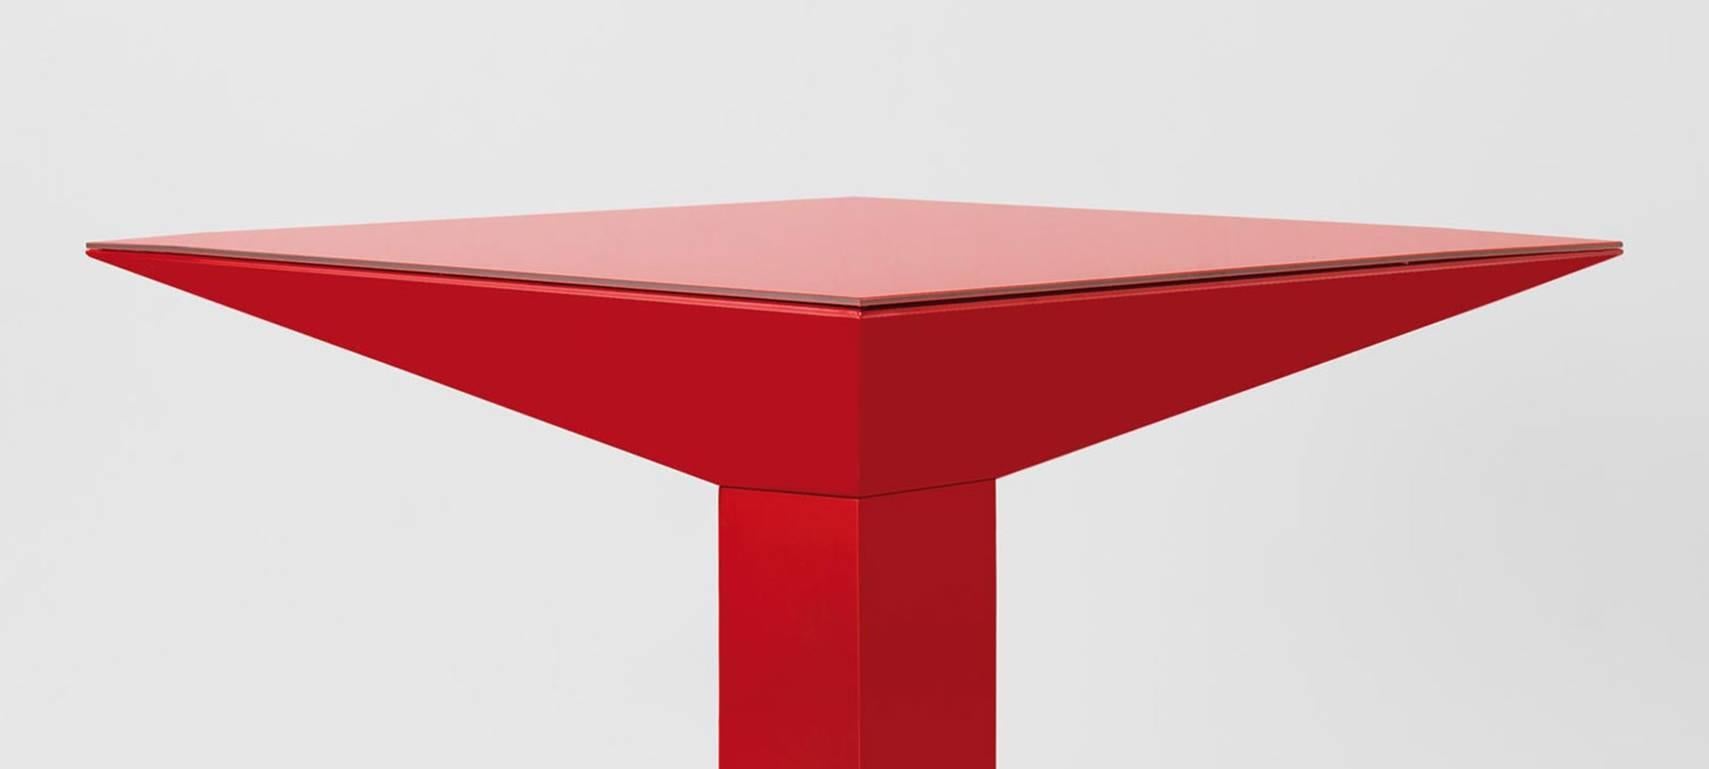 Table Mettsass conçue par Ettore Sottsass à Barcelona et fabriquée par BD.

La structure est constituée de tôles d'acier plates, peintes en rouge RAL 3001. Le verre est peint dans la même couleur que la structure.

Dimensions : 110 x 110 x H 73